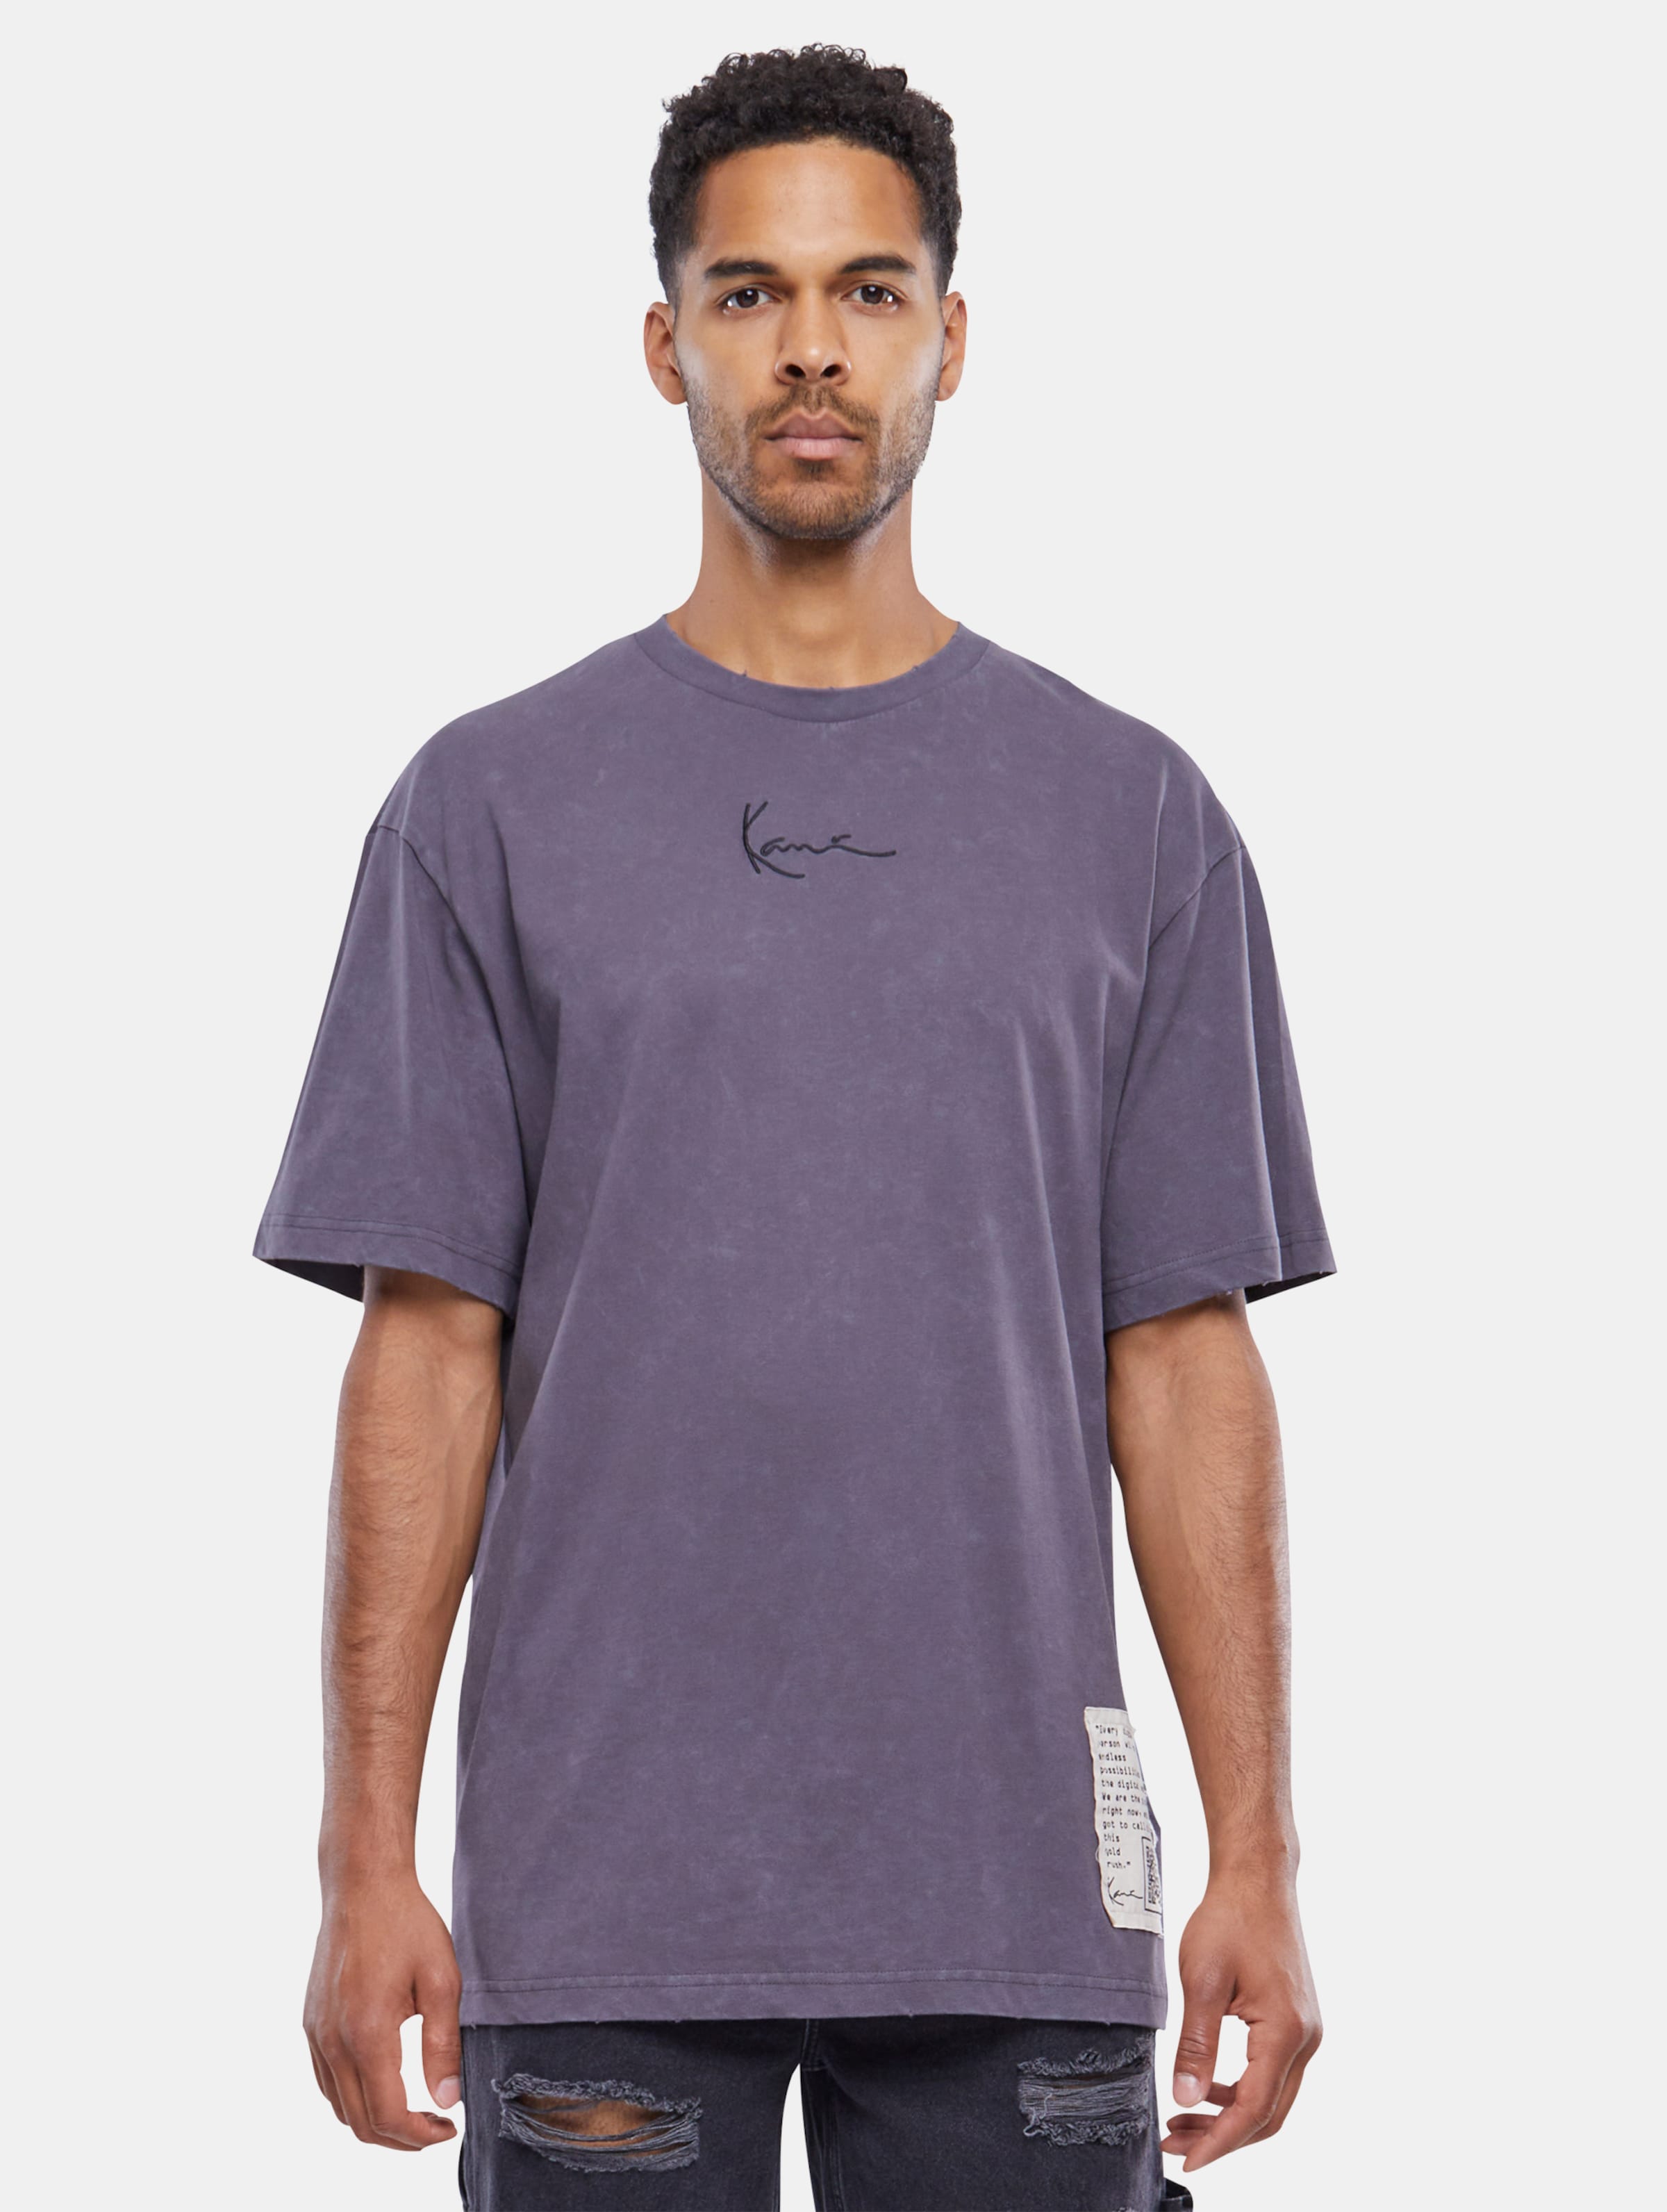 Karl Kani Small Signature destroyed T-Shirt Männer,Unisex op kleur violet, Maat S